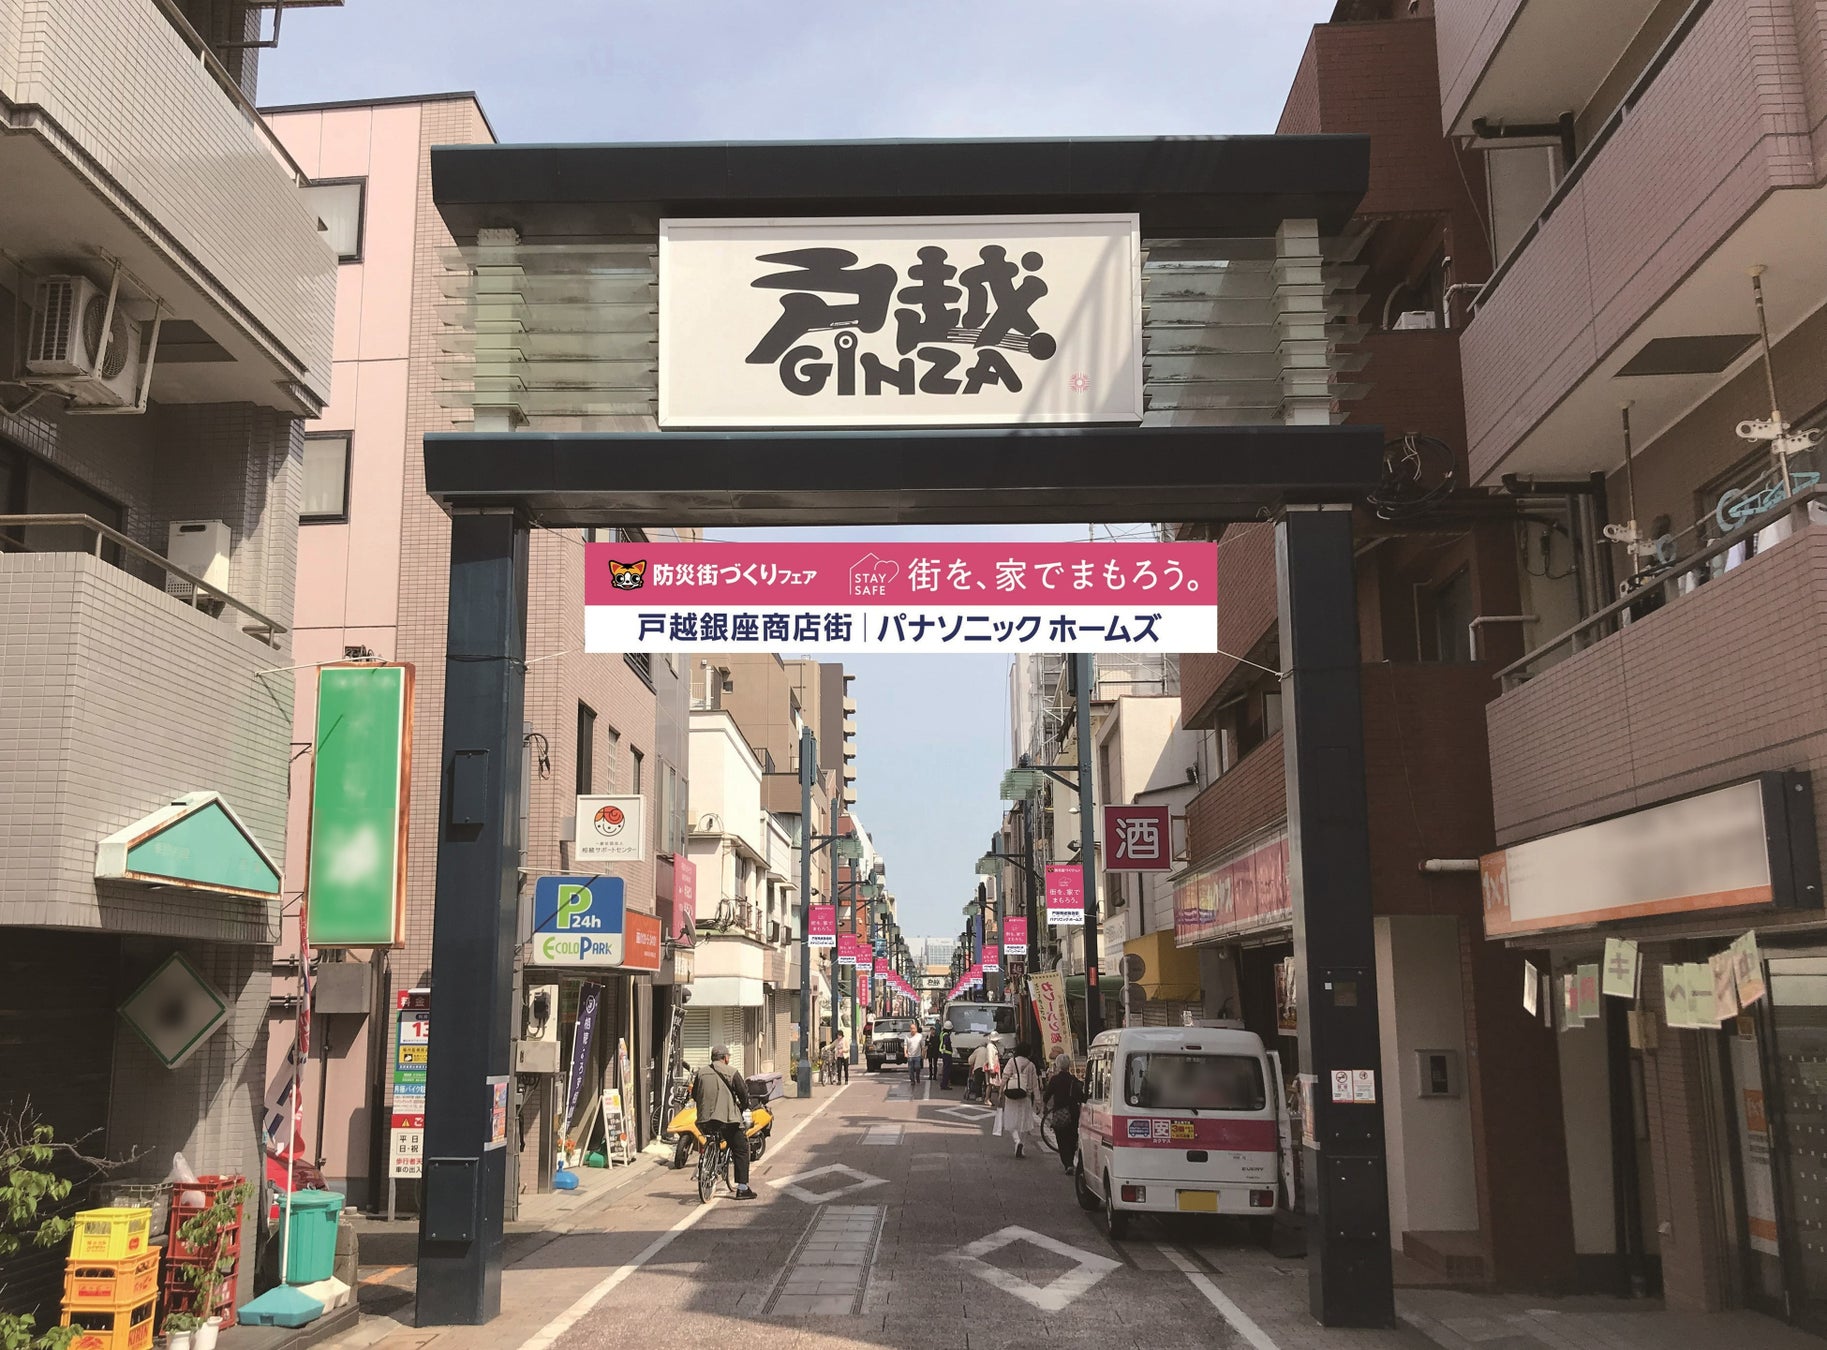 9月1日は、関東大震災から100年目の「防災の日」。改めて防災を考える『街を、家でまもろう。』を提唱のサブ画像1_戸越銀座商店街におけるメッセージ掲出例